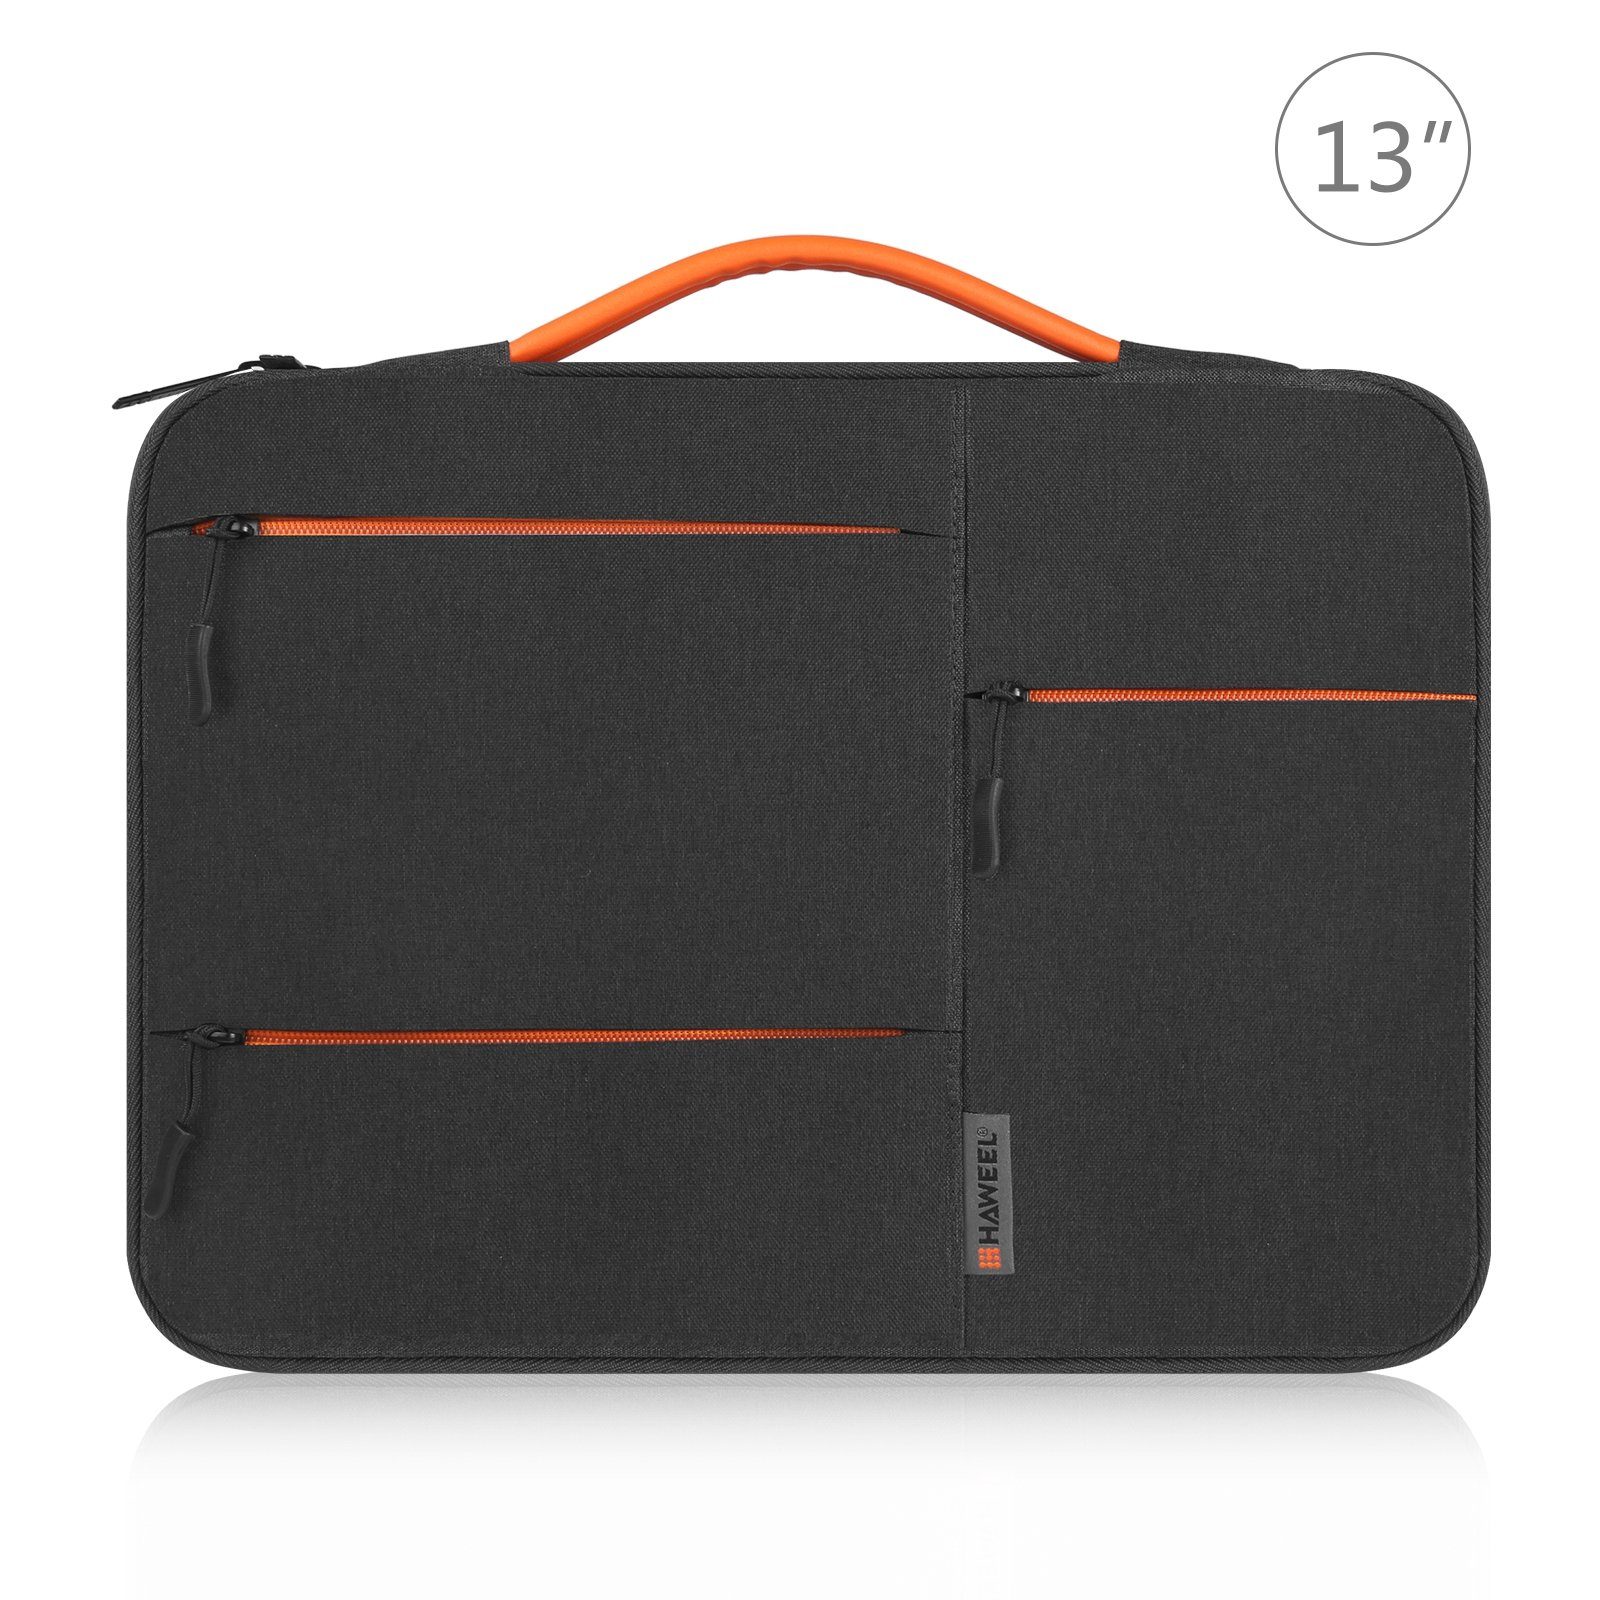 König Design Laptoptasche Universal Notebooktasche 13 - 16 Zoll Tasche  Hülle Laptop Notebook Case Cover, Schocksicher